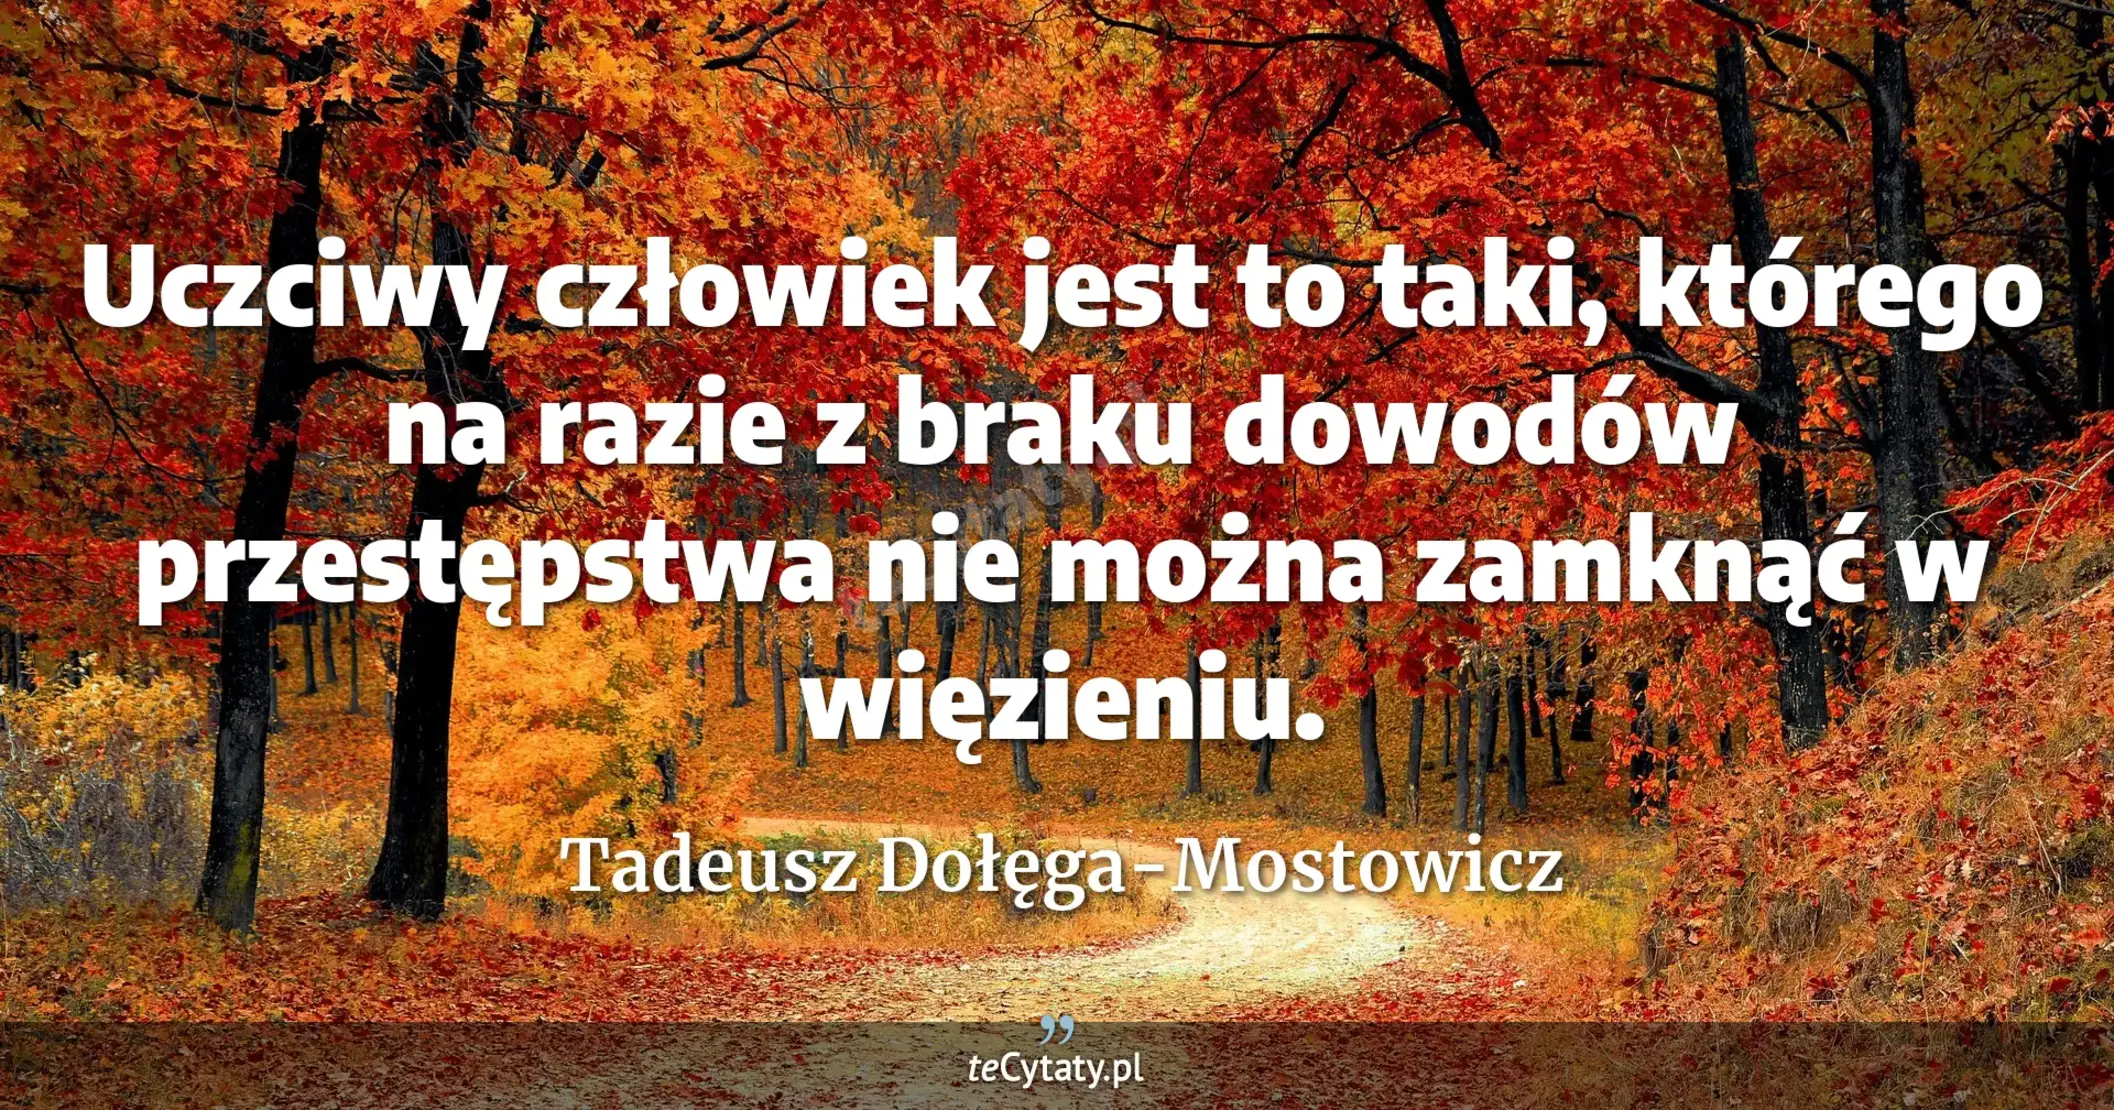 Uczciwy człowiek jest to taki, którego na razie z braku dowodów przestępstwa nie można zamknąć w więzieniu. - Tadeusz Dołęga-Mostowicz